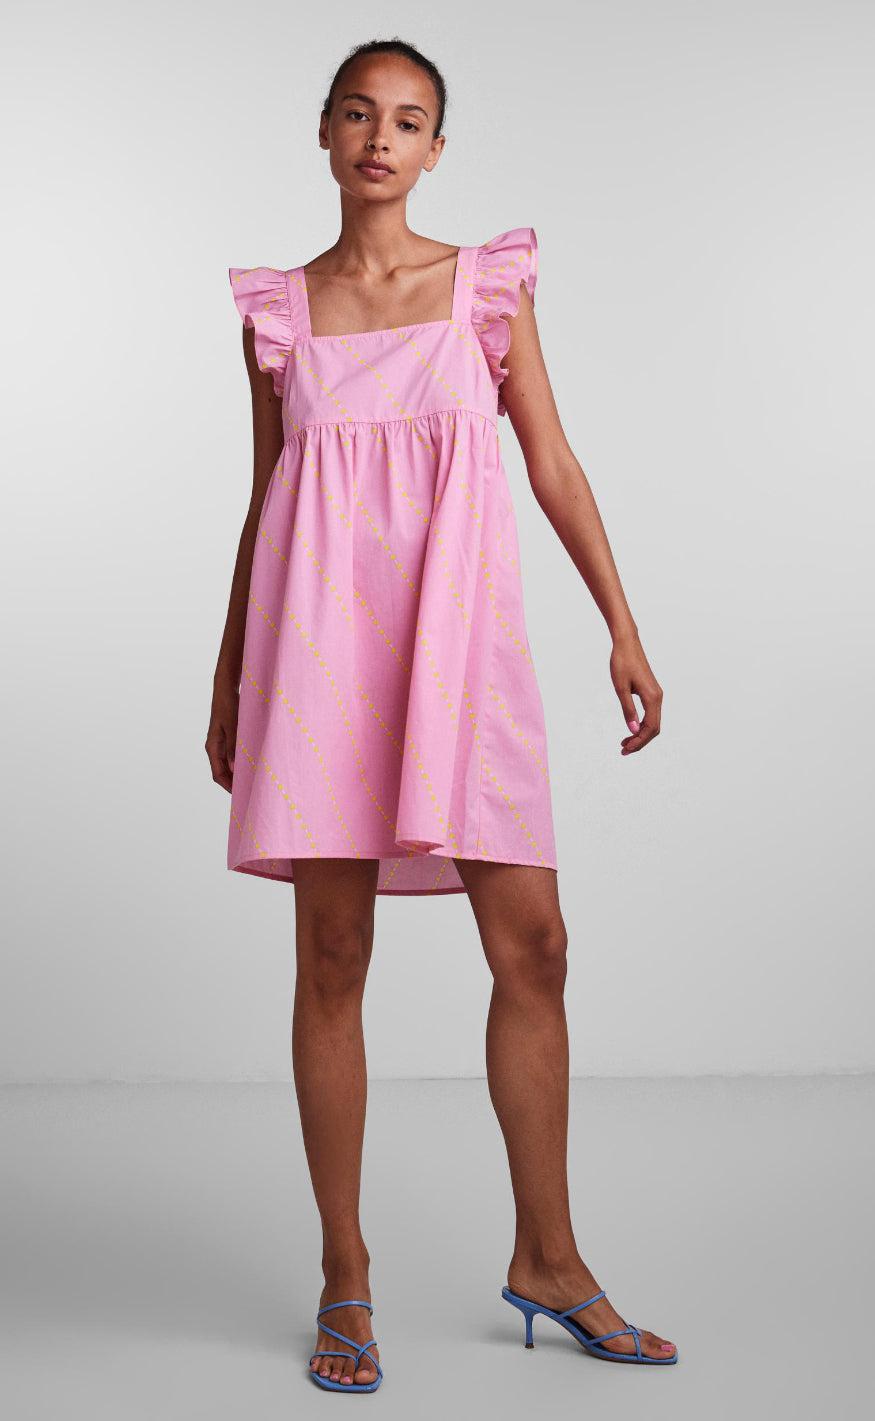 PIECES Kjole - Janni - Prism Pink Hurtig levering | Fashionbystrand